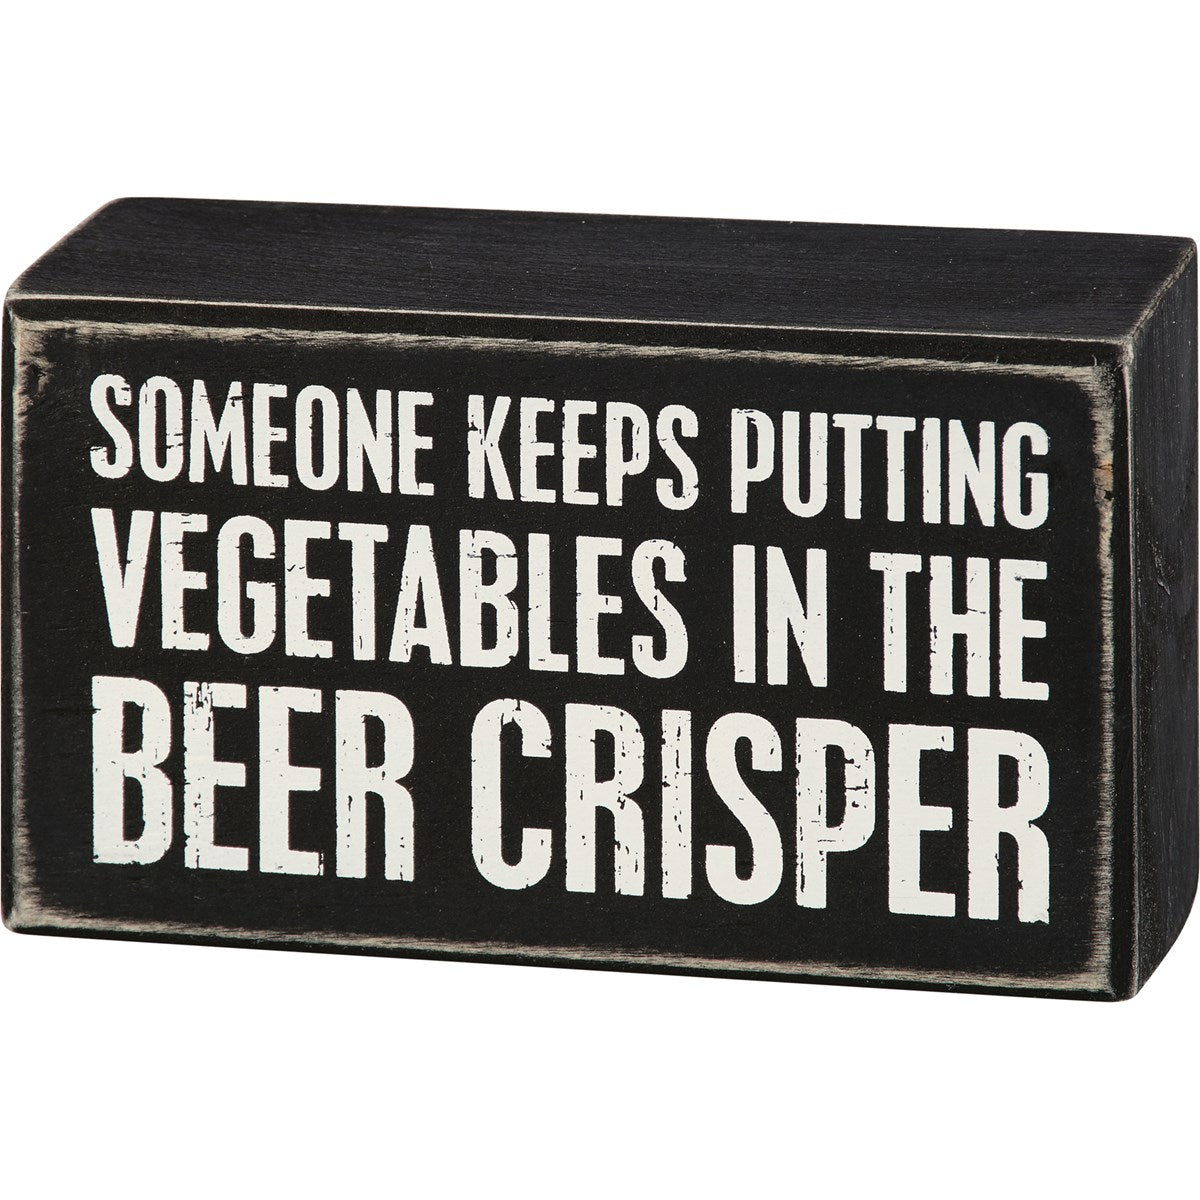 Beer Crisper Box Sign